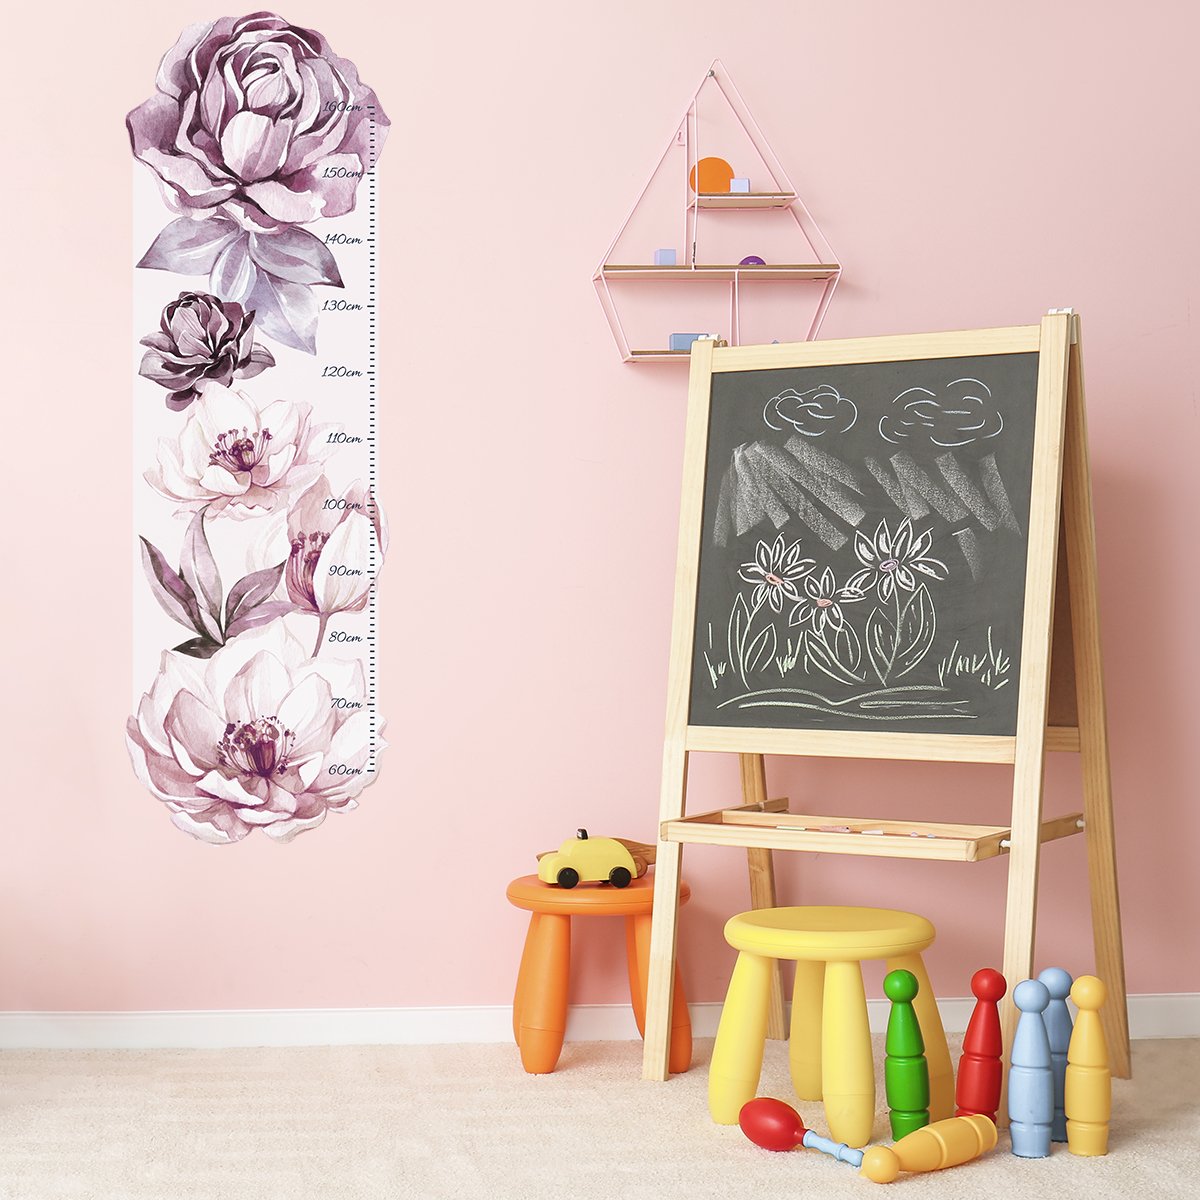 Naklejka na ścianę miarka wzrostu dla dzieci kwiaty#kolor_rozowy